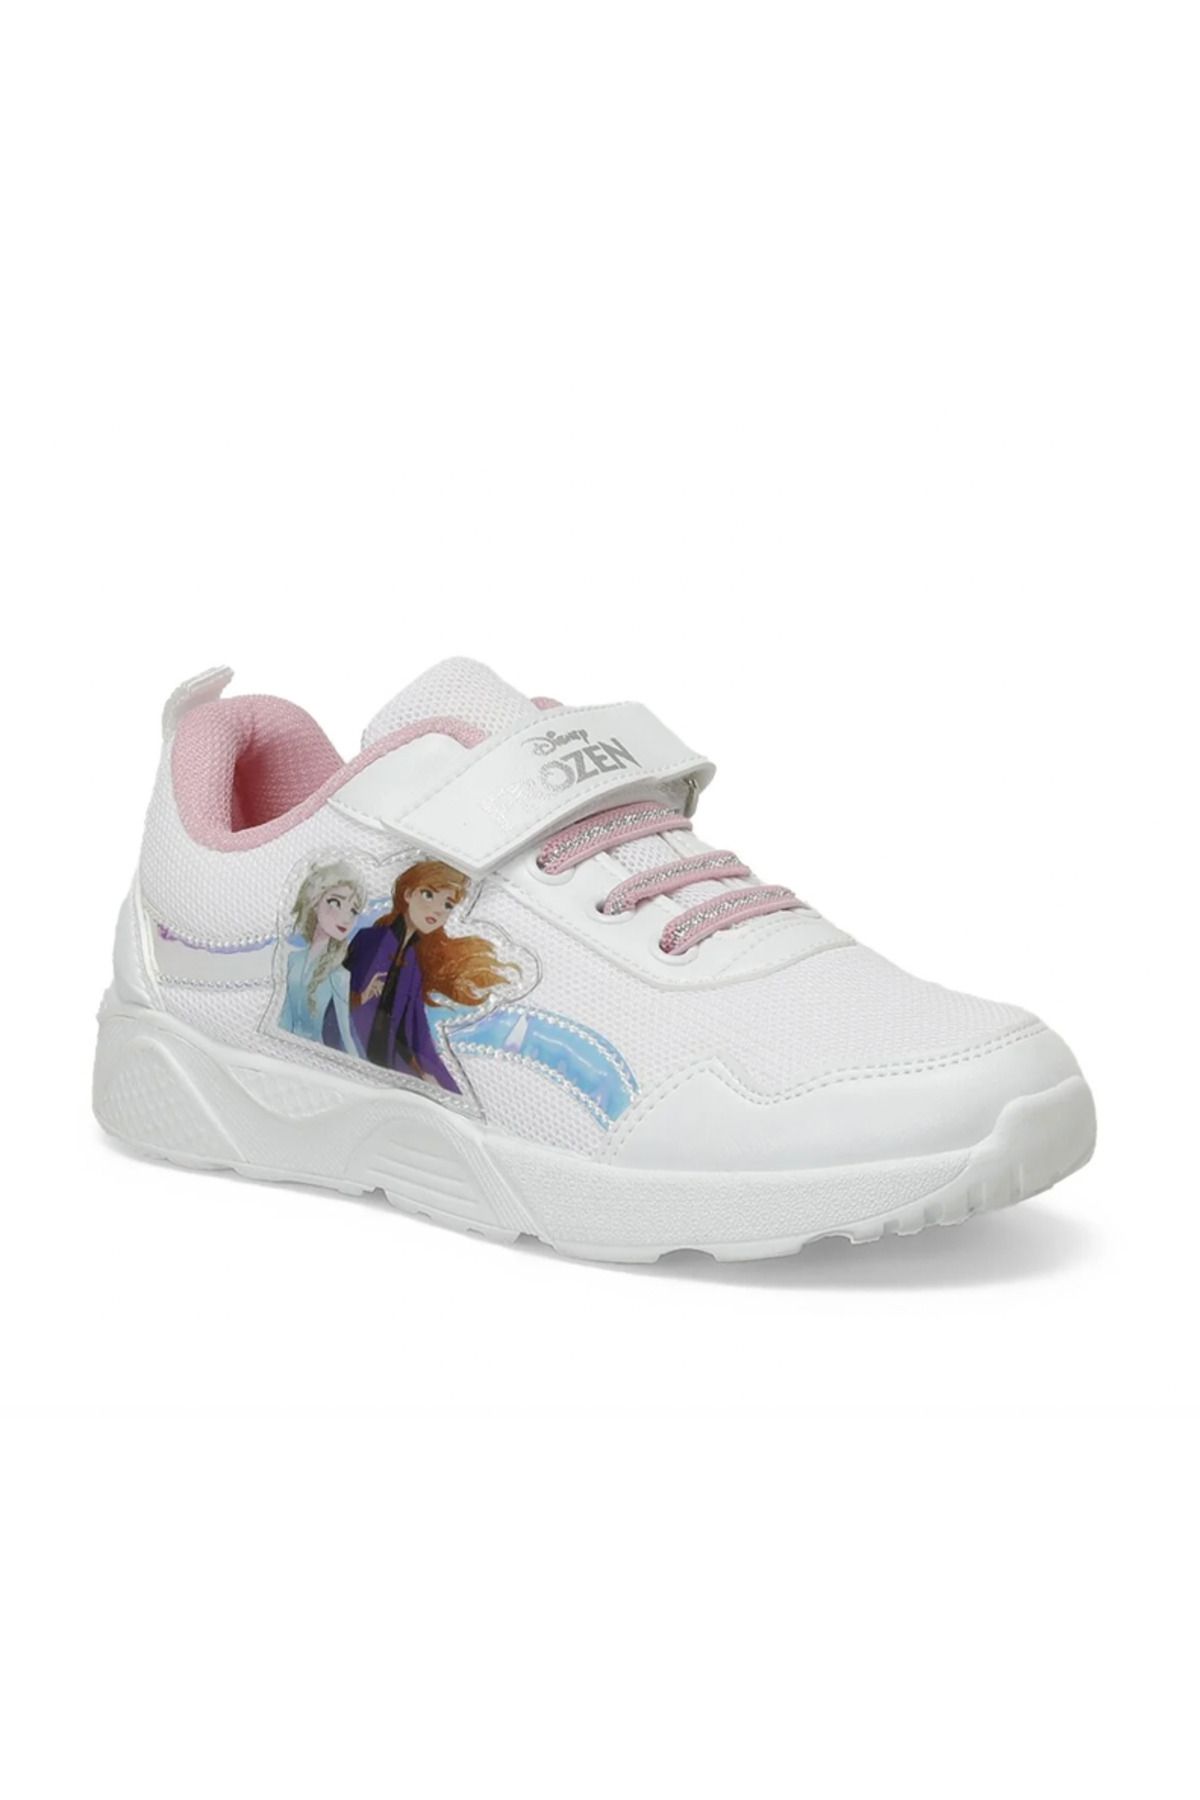 Frozen Beyaz Kız Çocuk Yürüyüş Ayakkabı